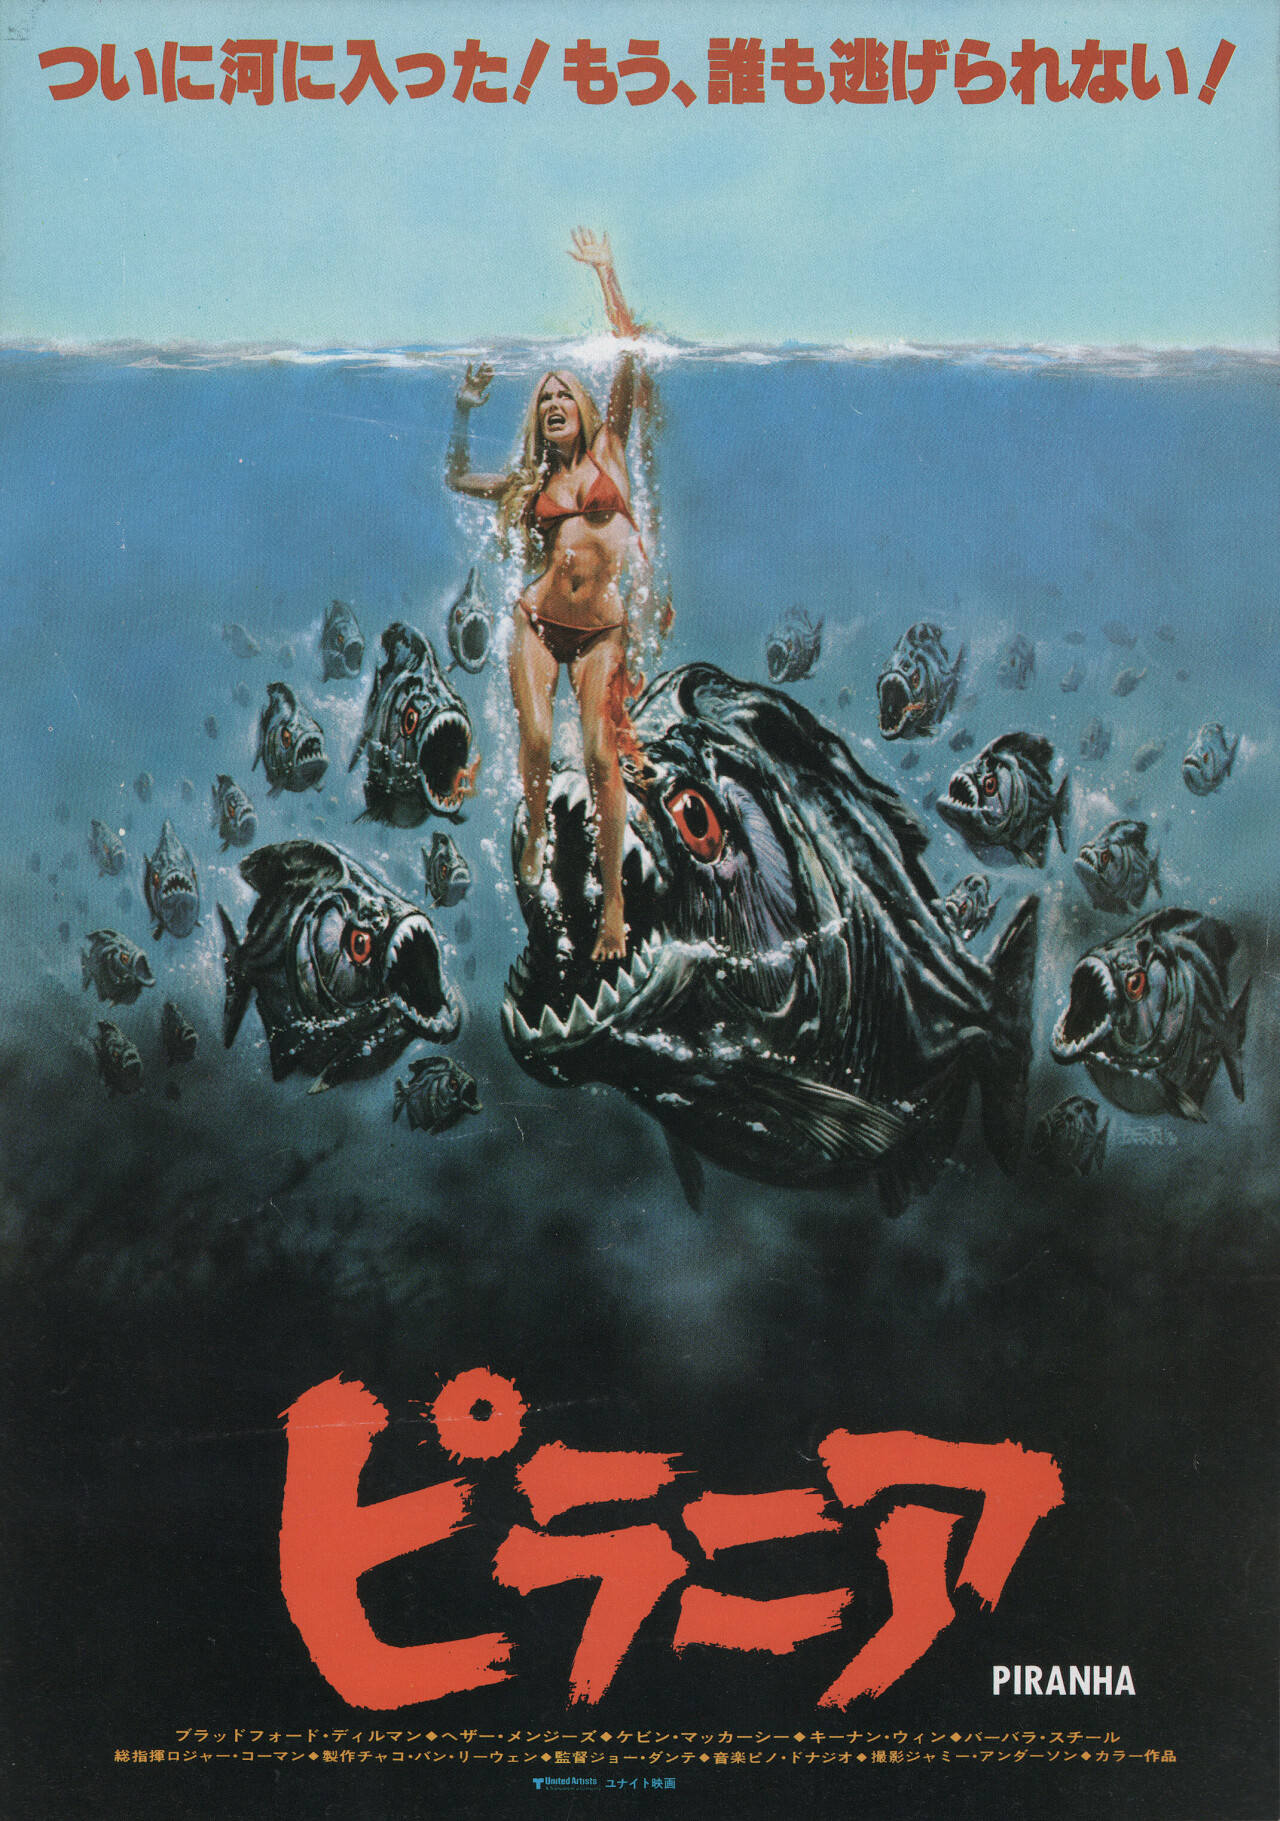 Пираньи (Piranha, 1978), режиссёр Джо Данте, японский постер к фильму, автор Боб Ларкин (ужасы, 1978 год)